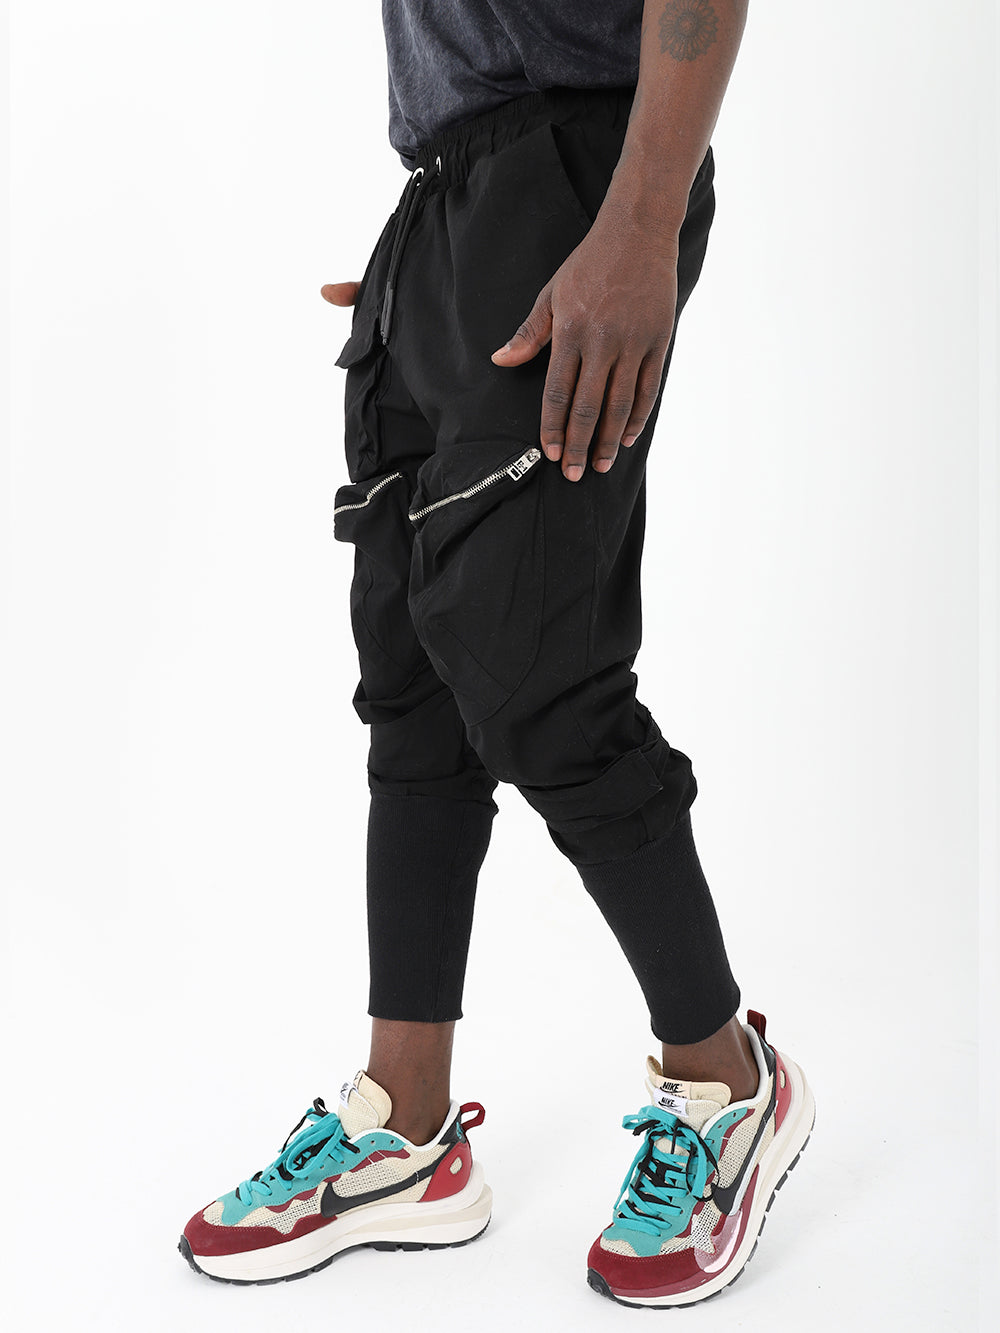 Style Sweatpants for Joggers SERNES - Streetwear & Men